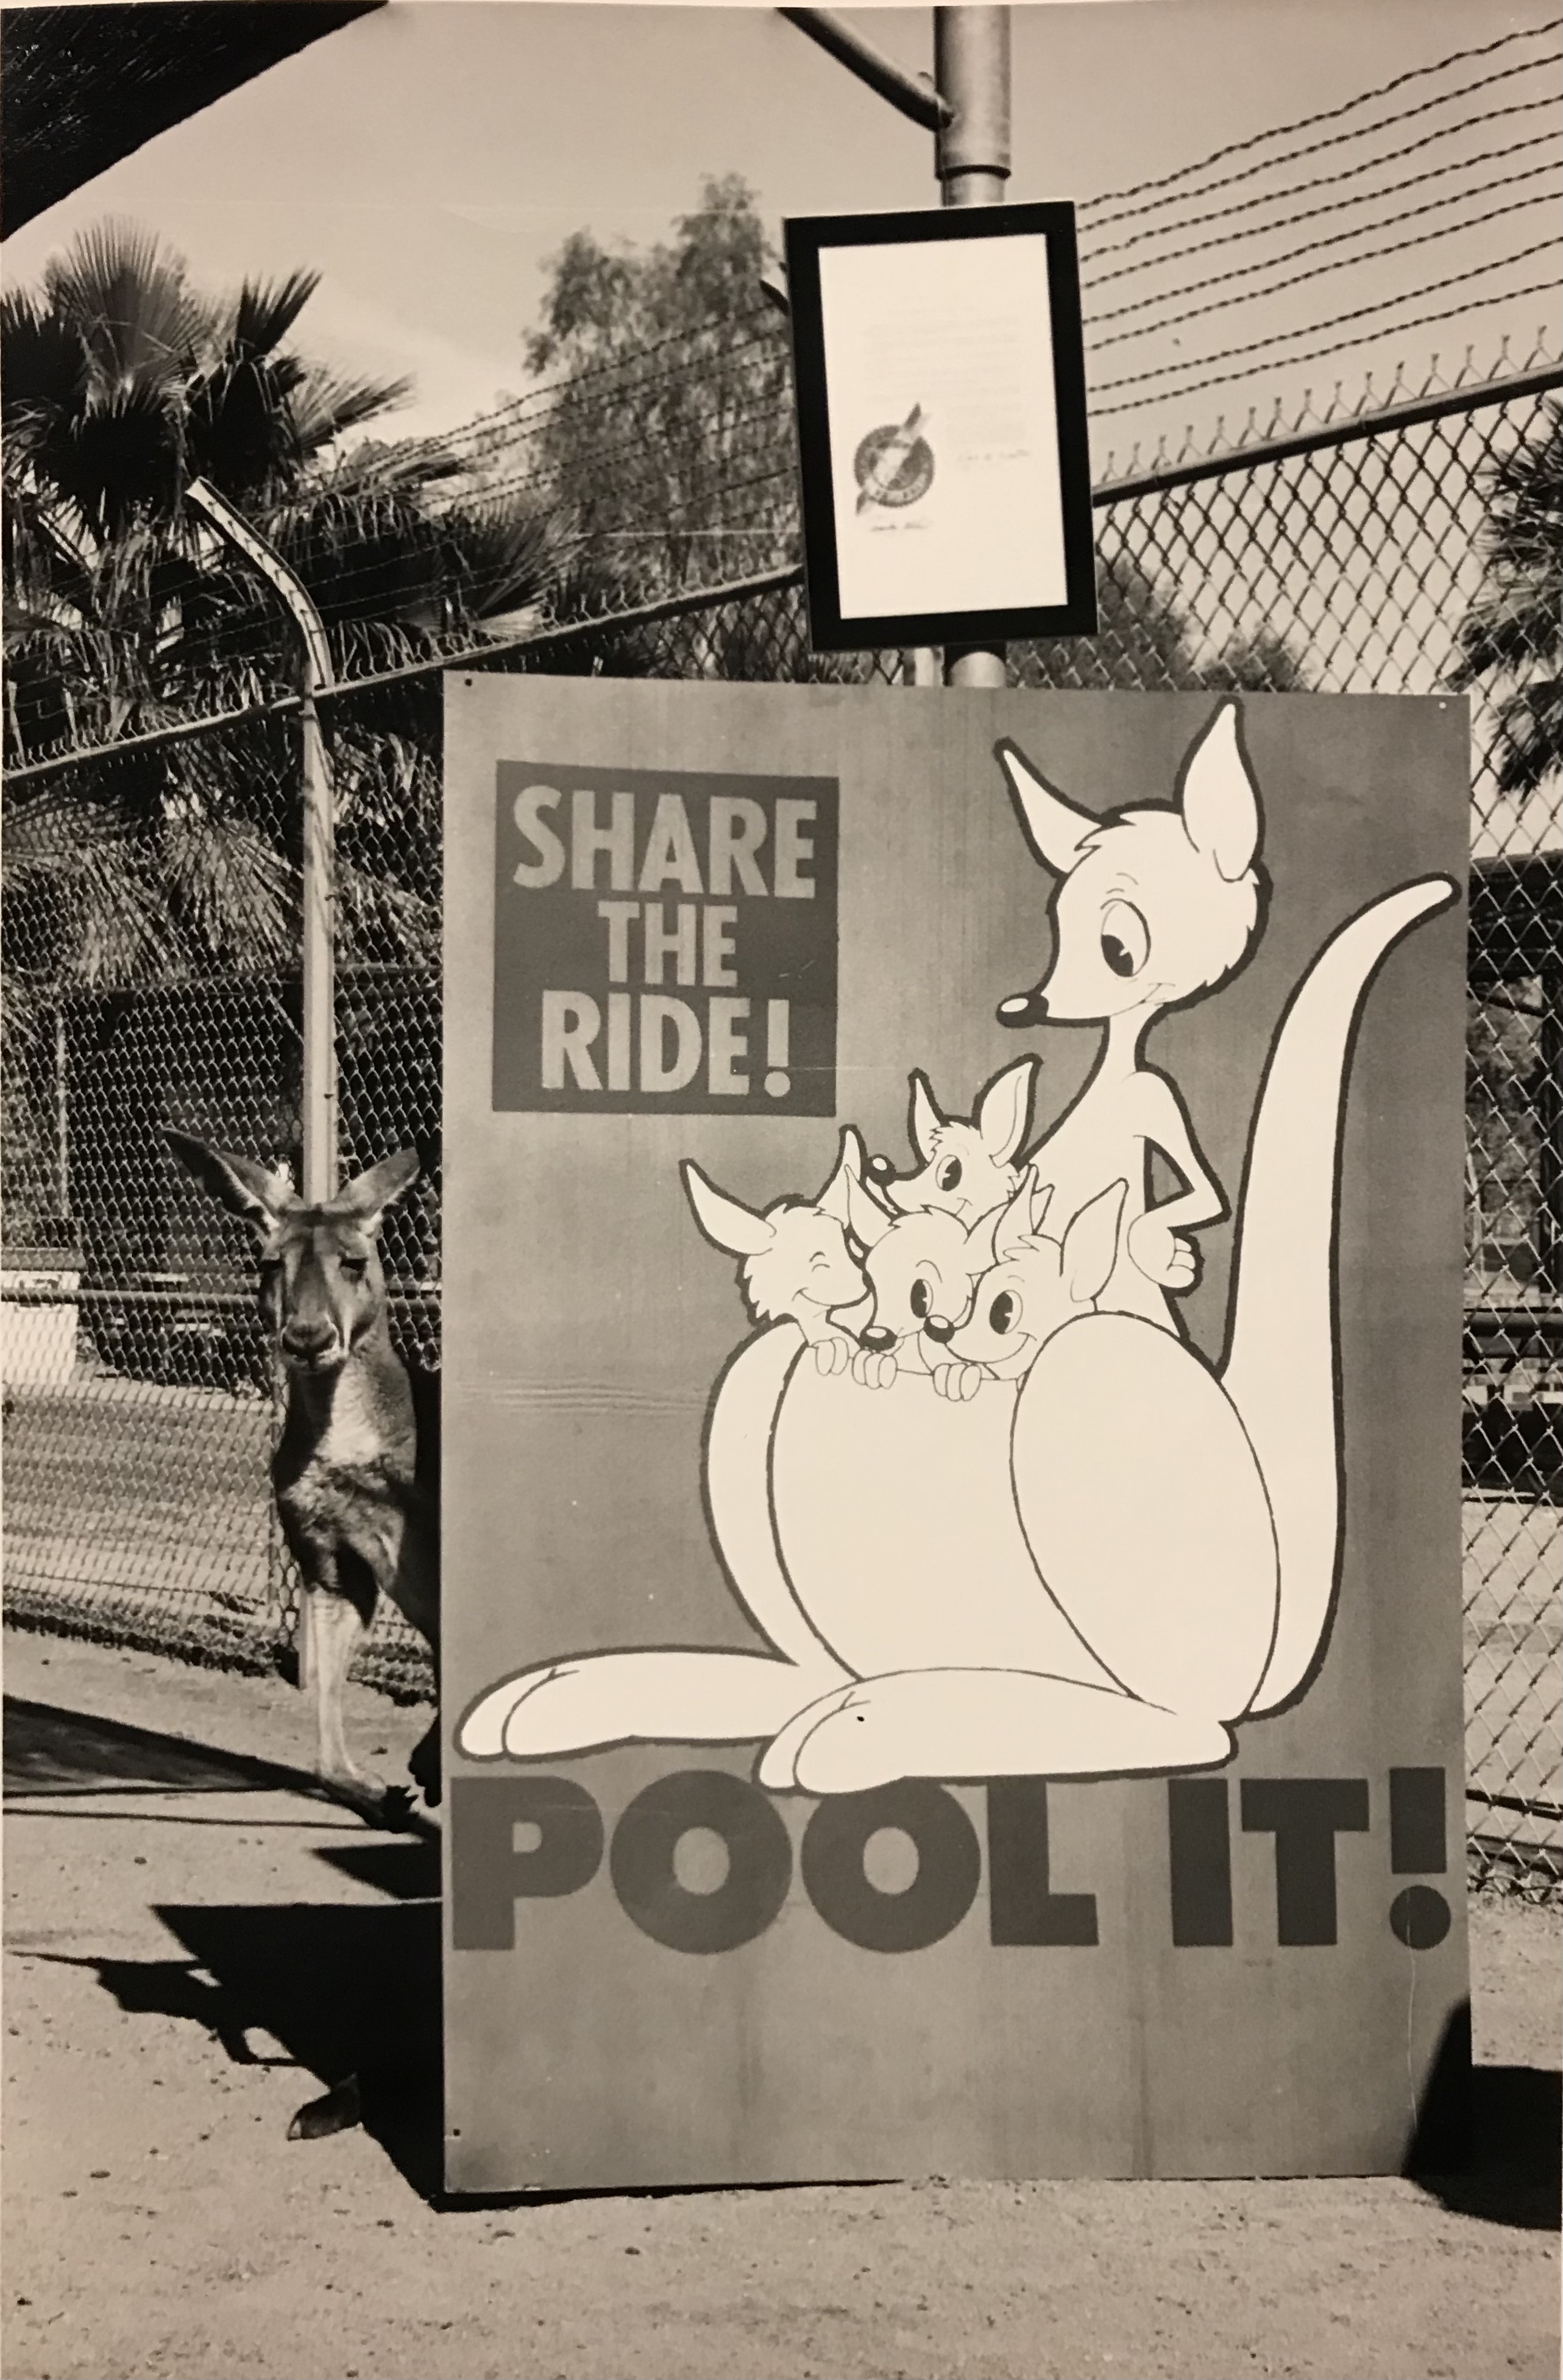 Pool it, Share the ride, Kangaroo